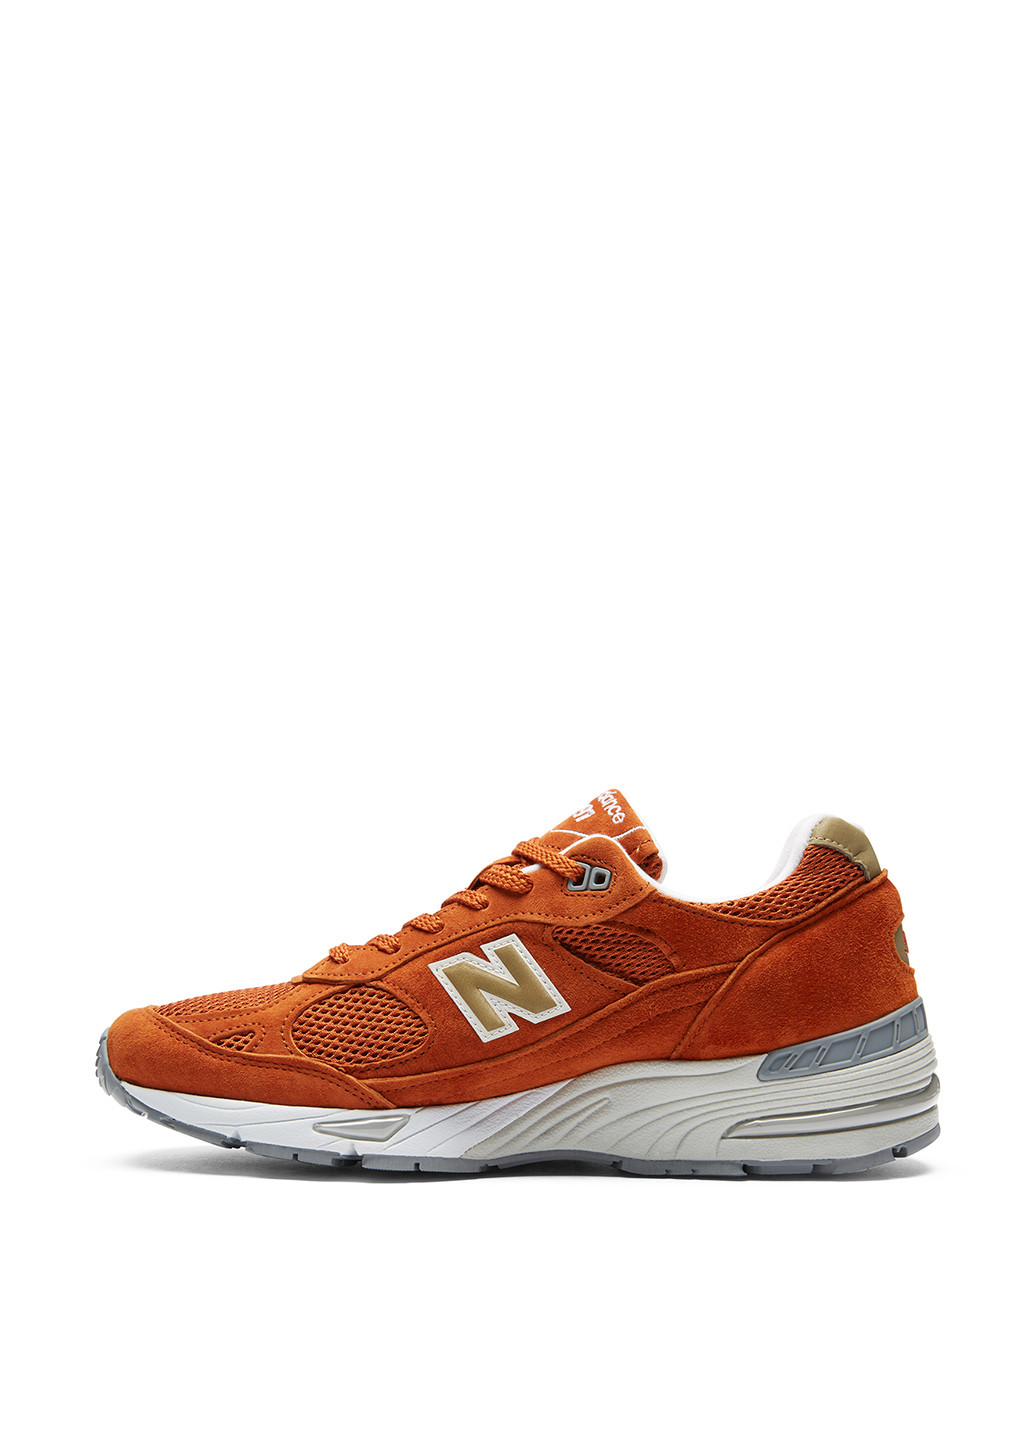 Оранжевые всесезонные кроссовки New Balance 991.0